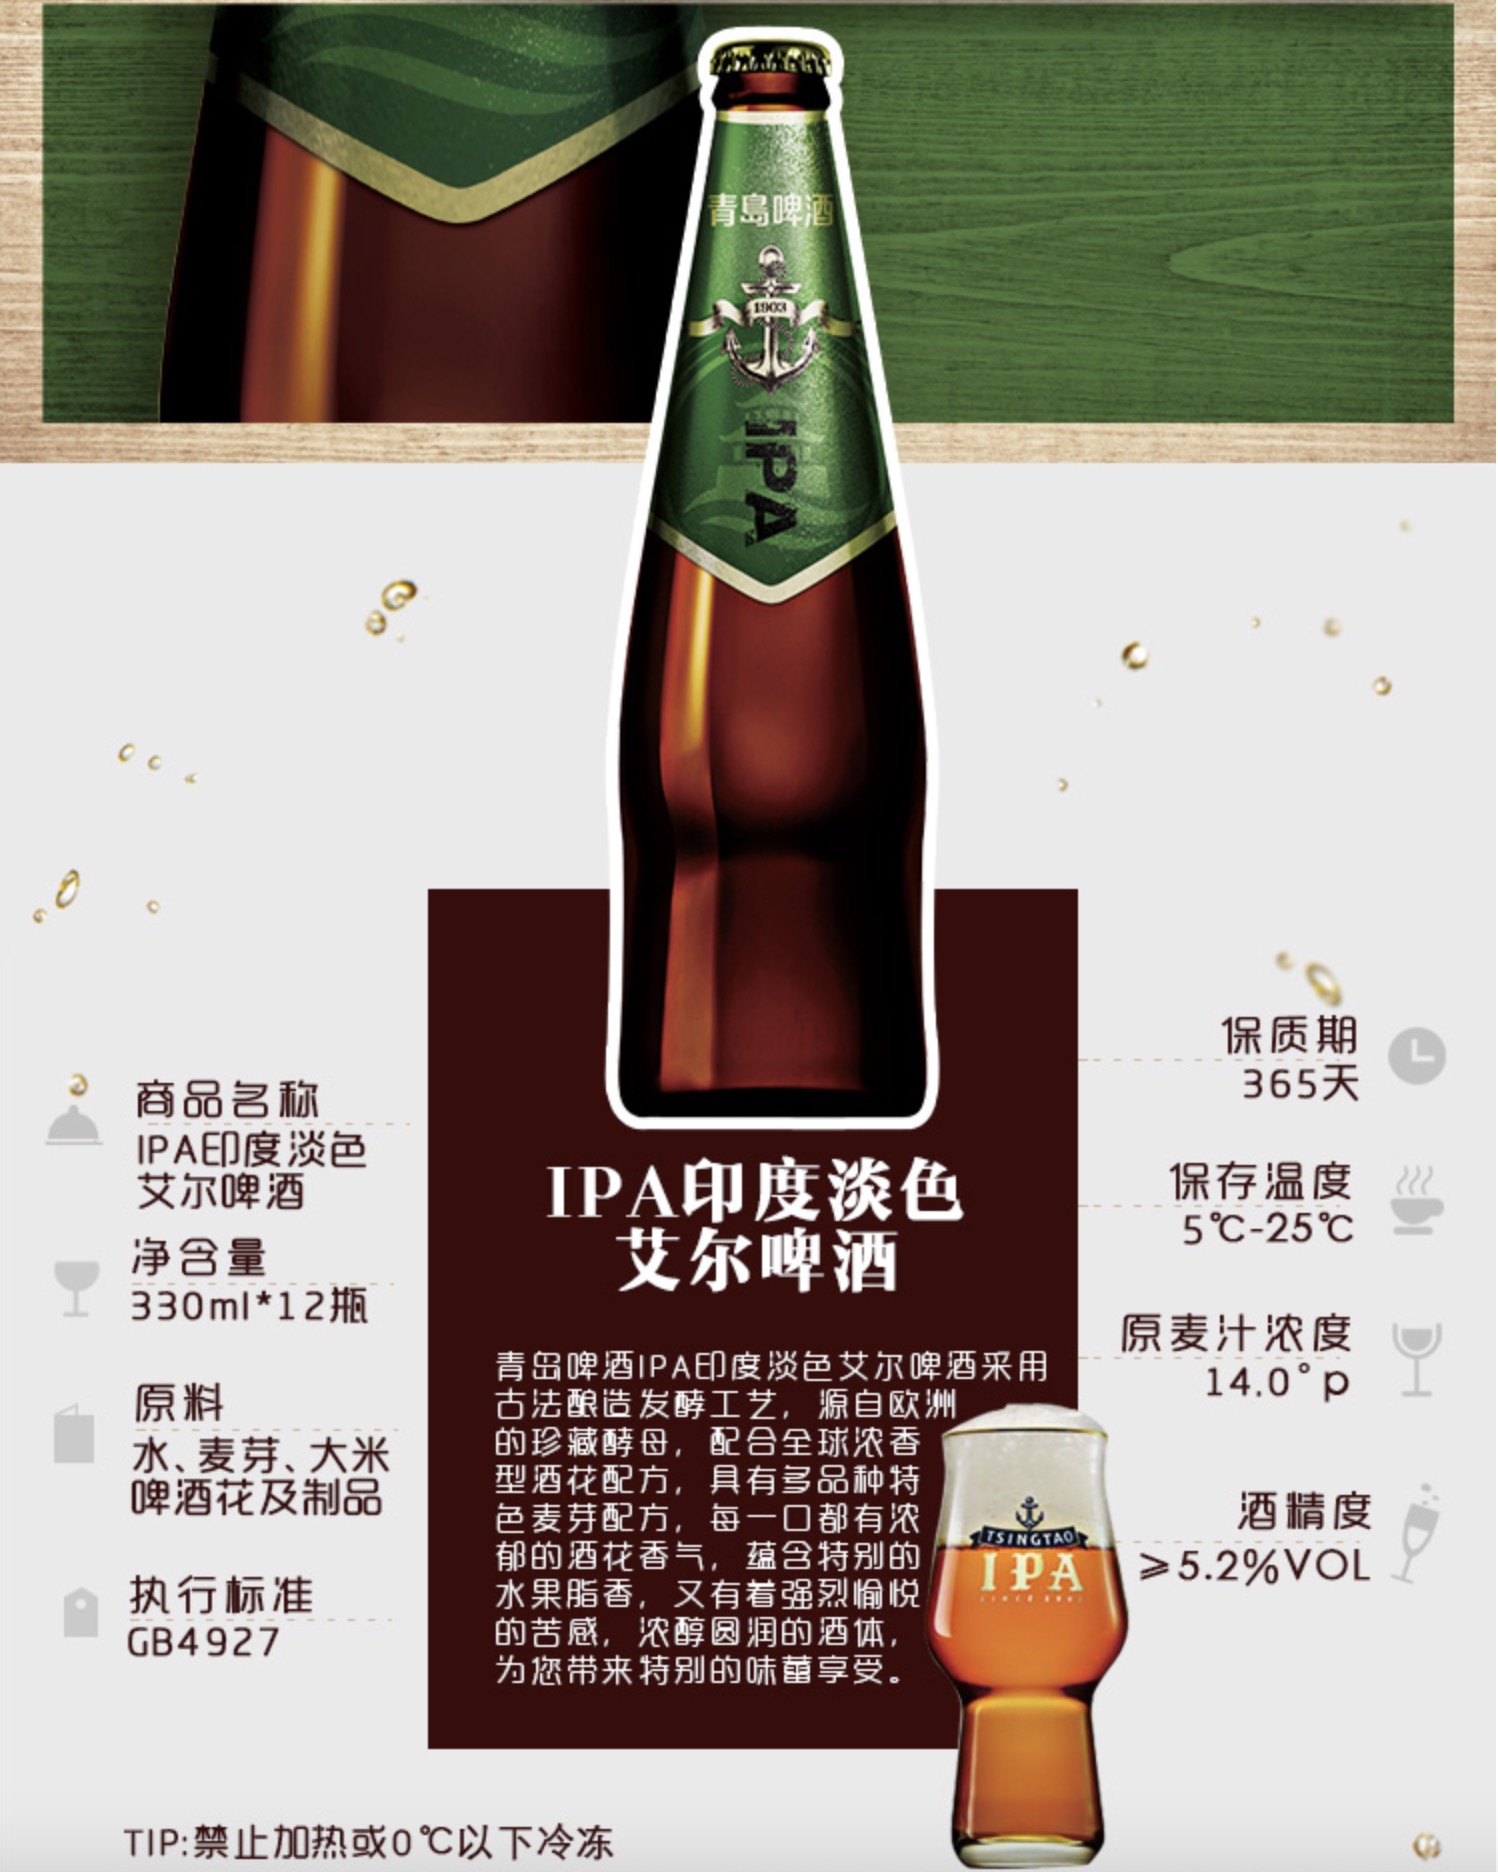 青岛啤酒IPA新品 印度淡色艾尔精酿啤酒 12瓶